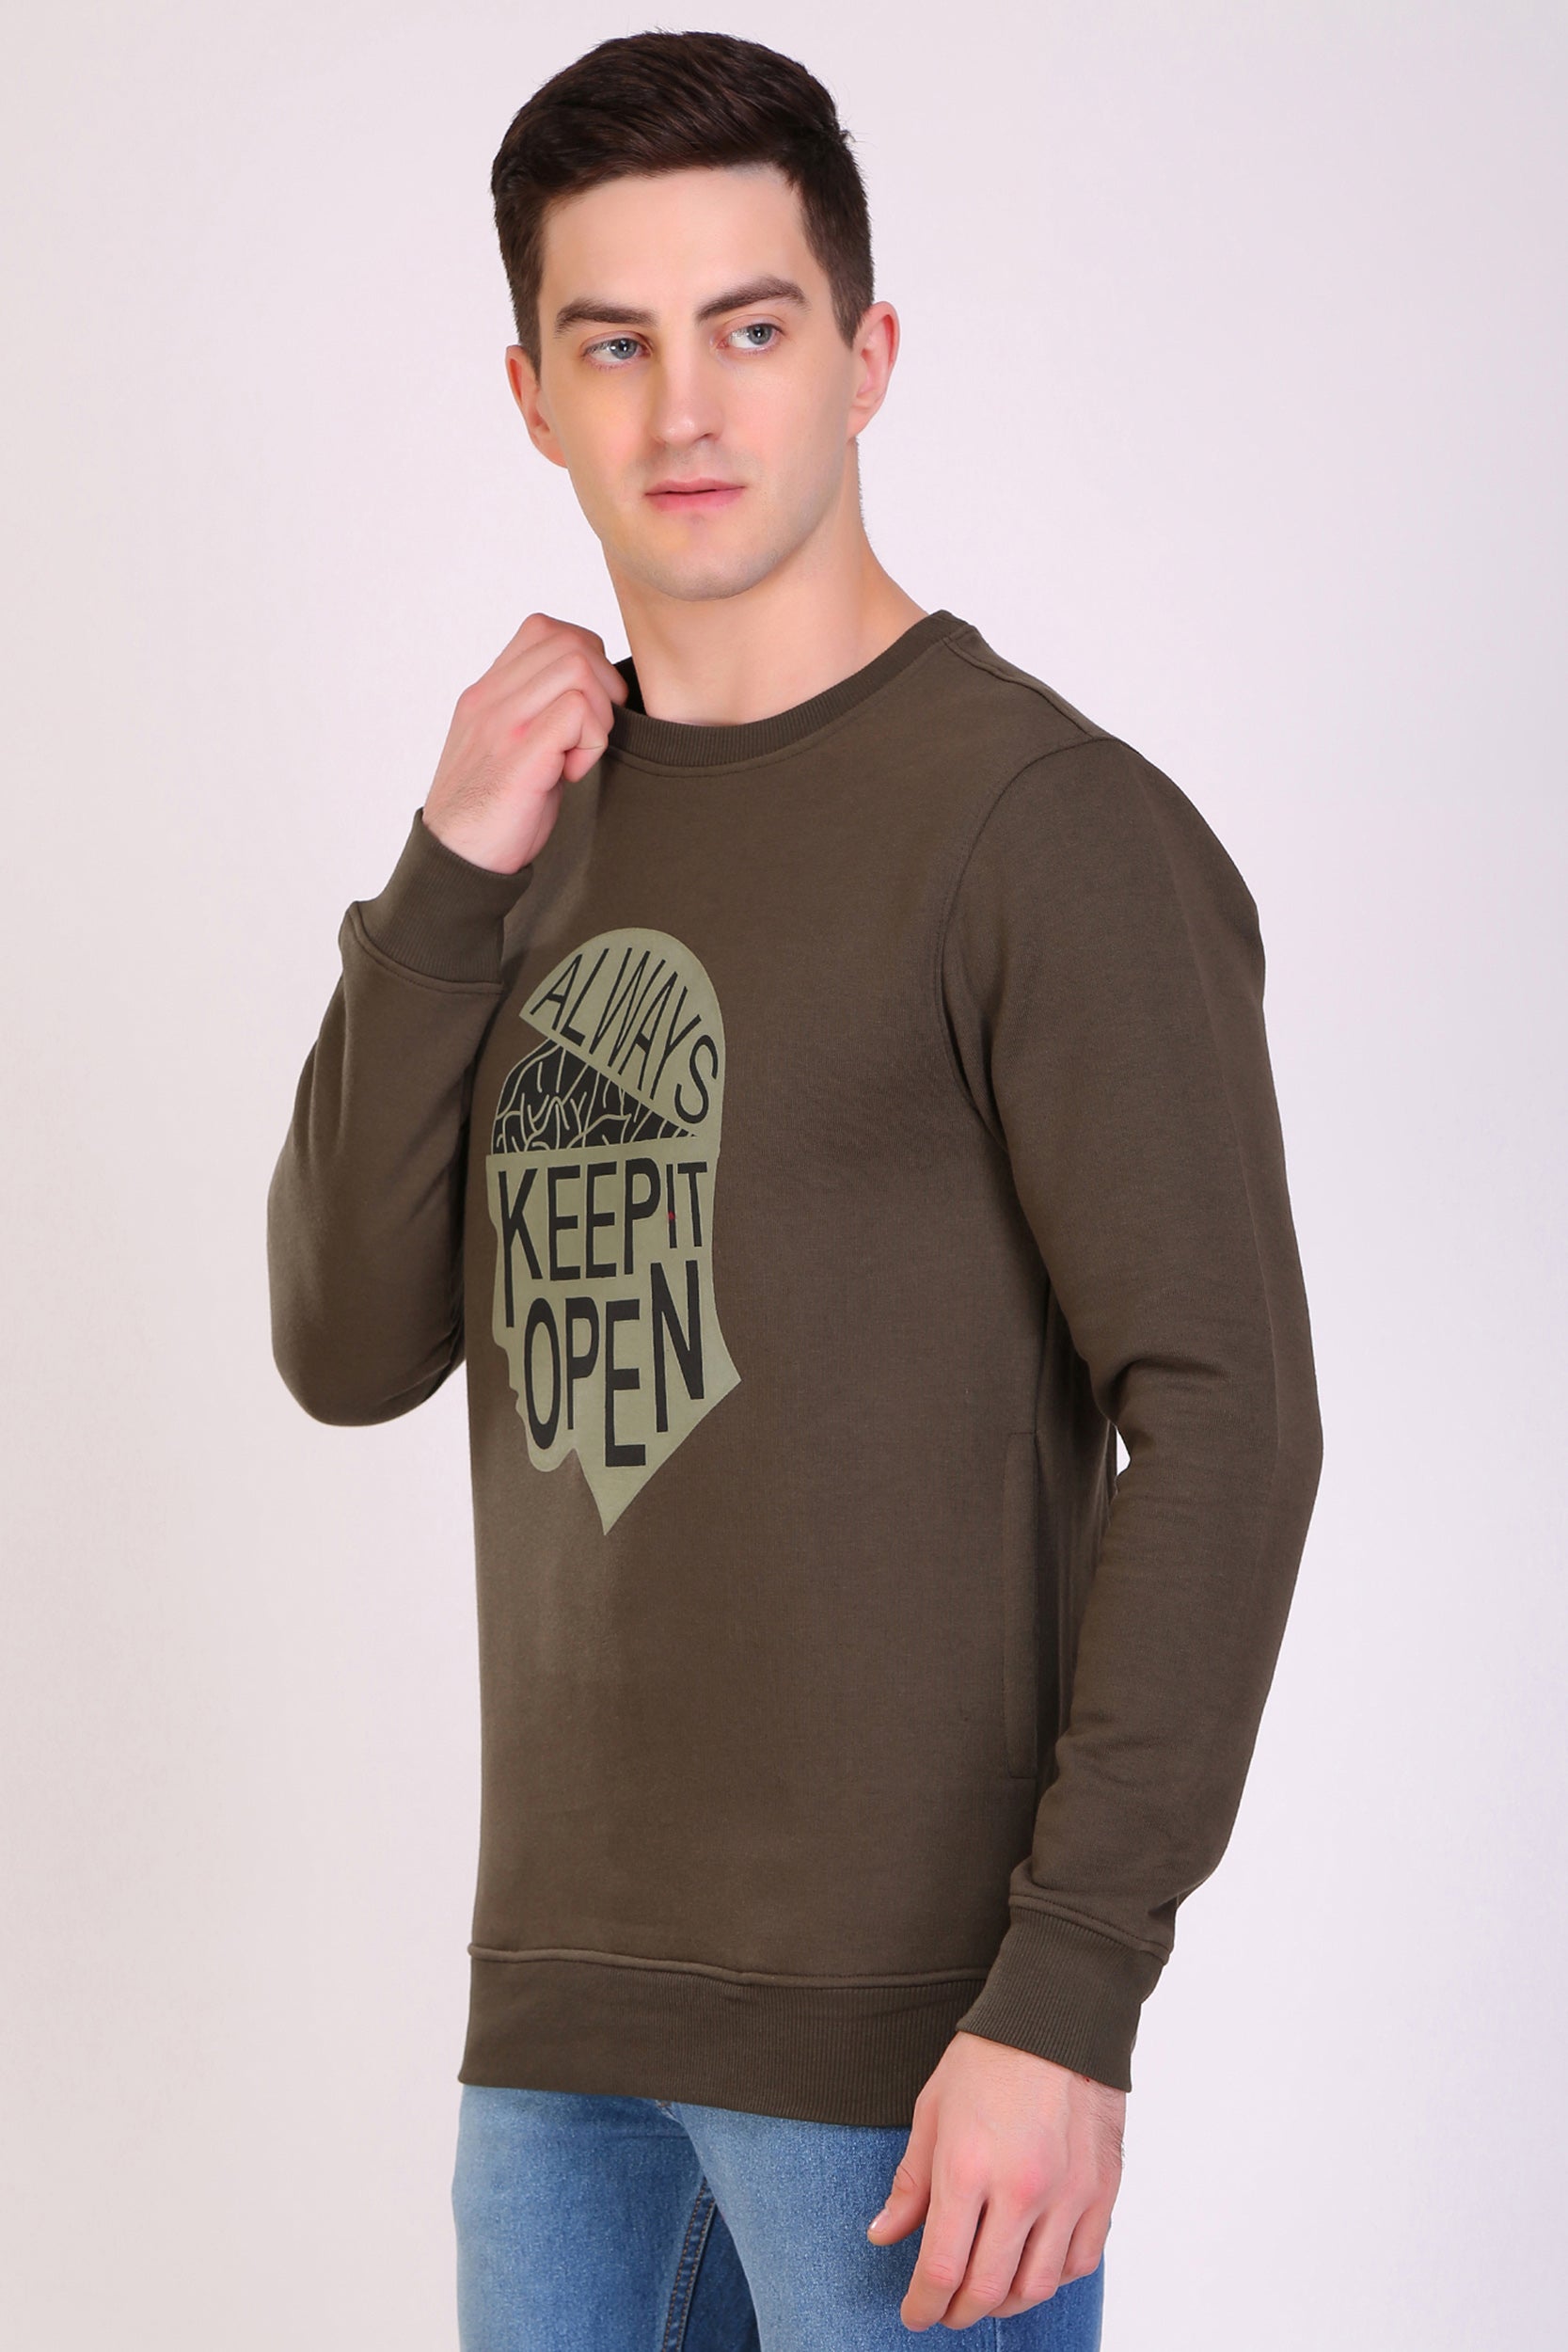 HiFlyers Full Sleeve Printed Men Sweatshirt-Olive